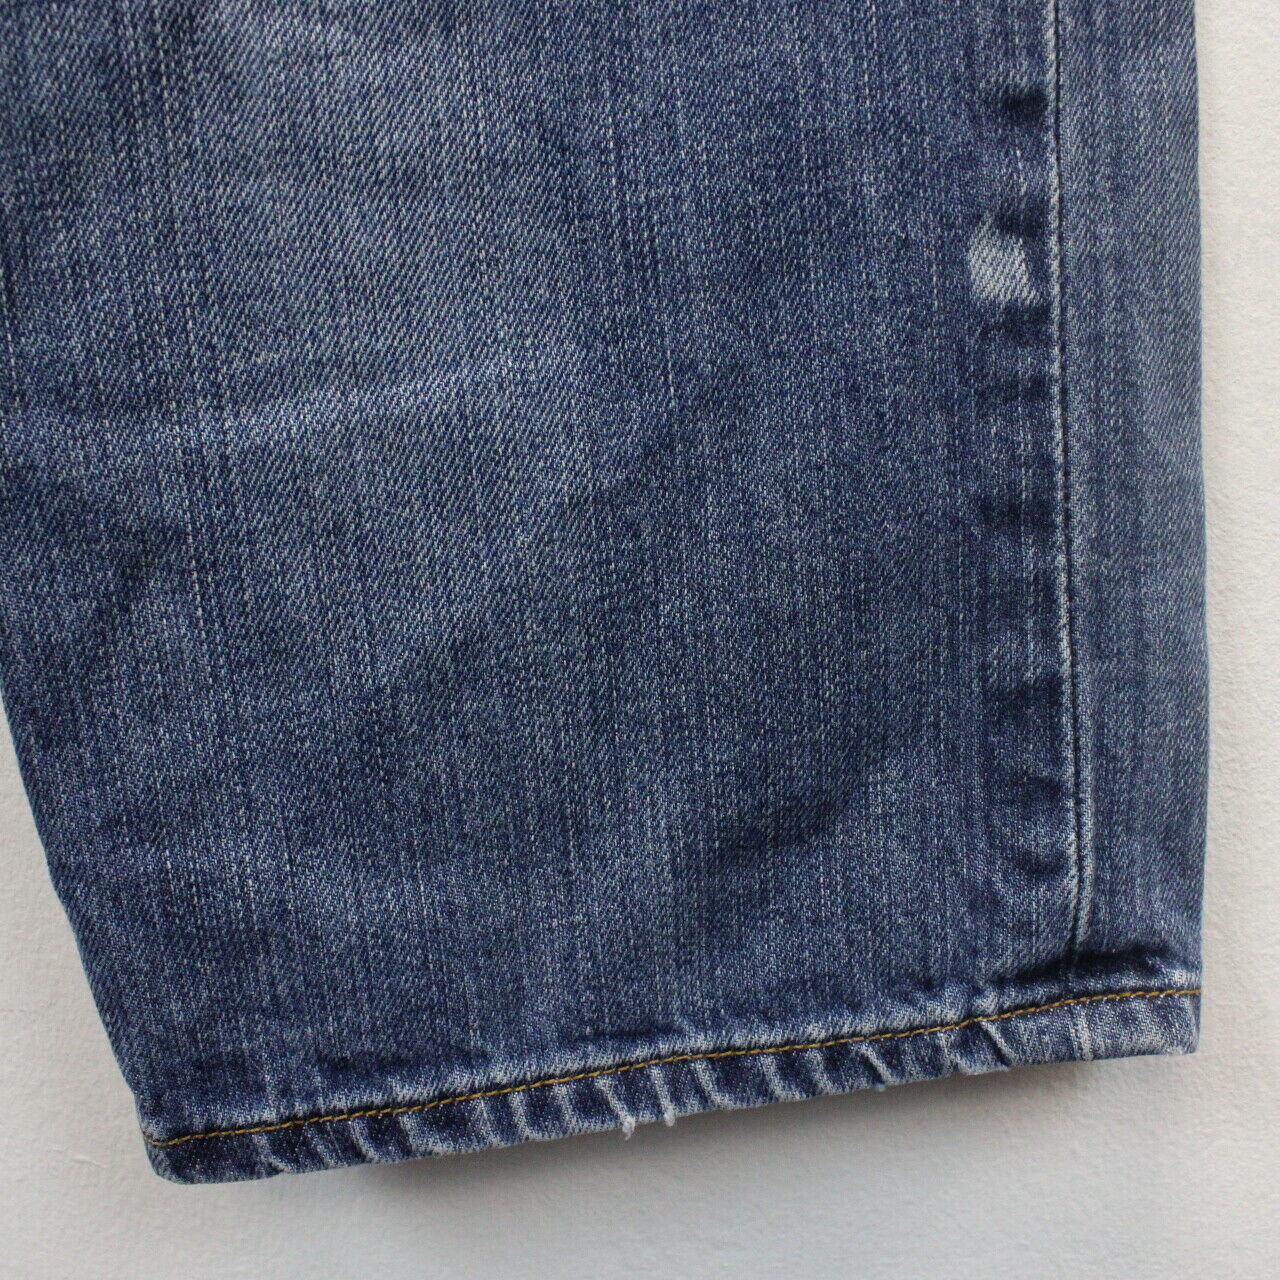 LEVIS 501 Jeans Blue | W31 L34